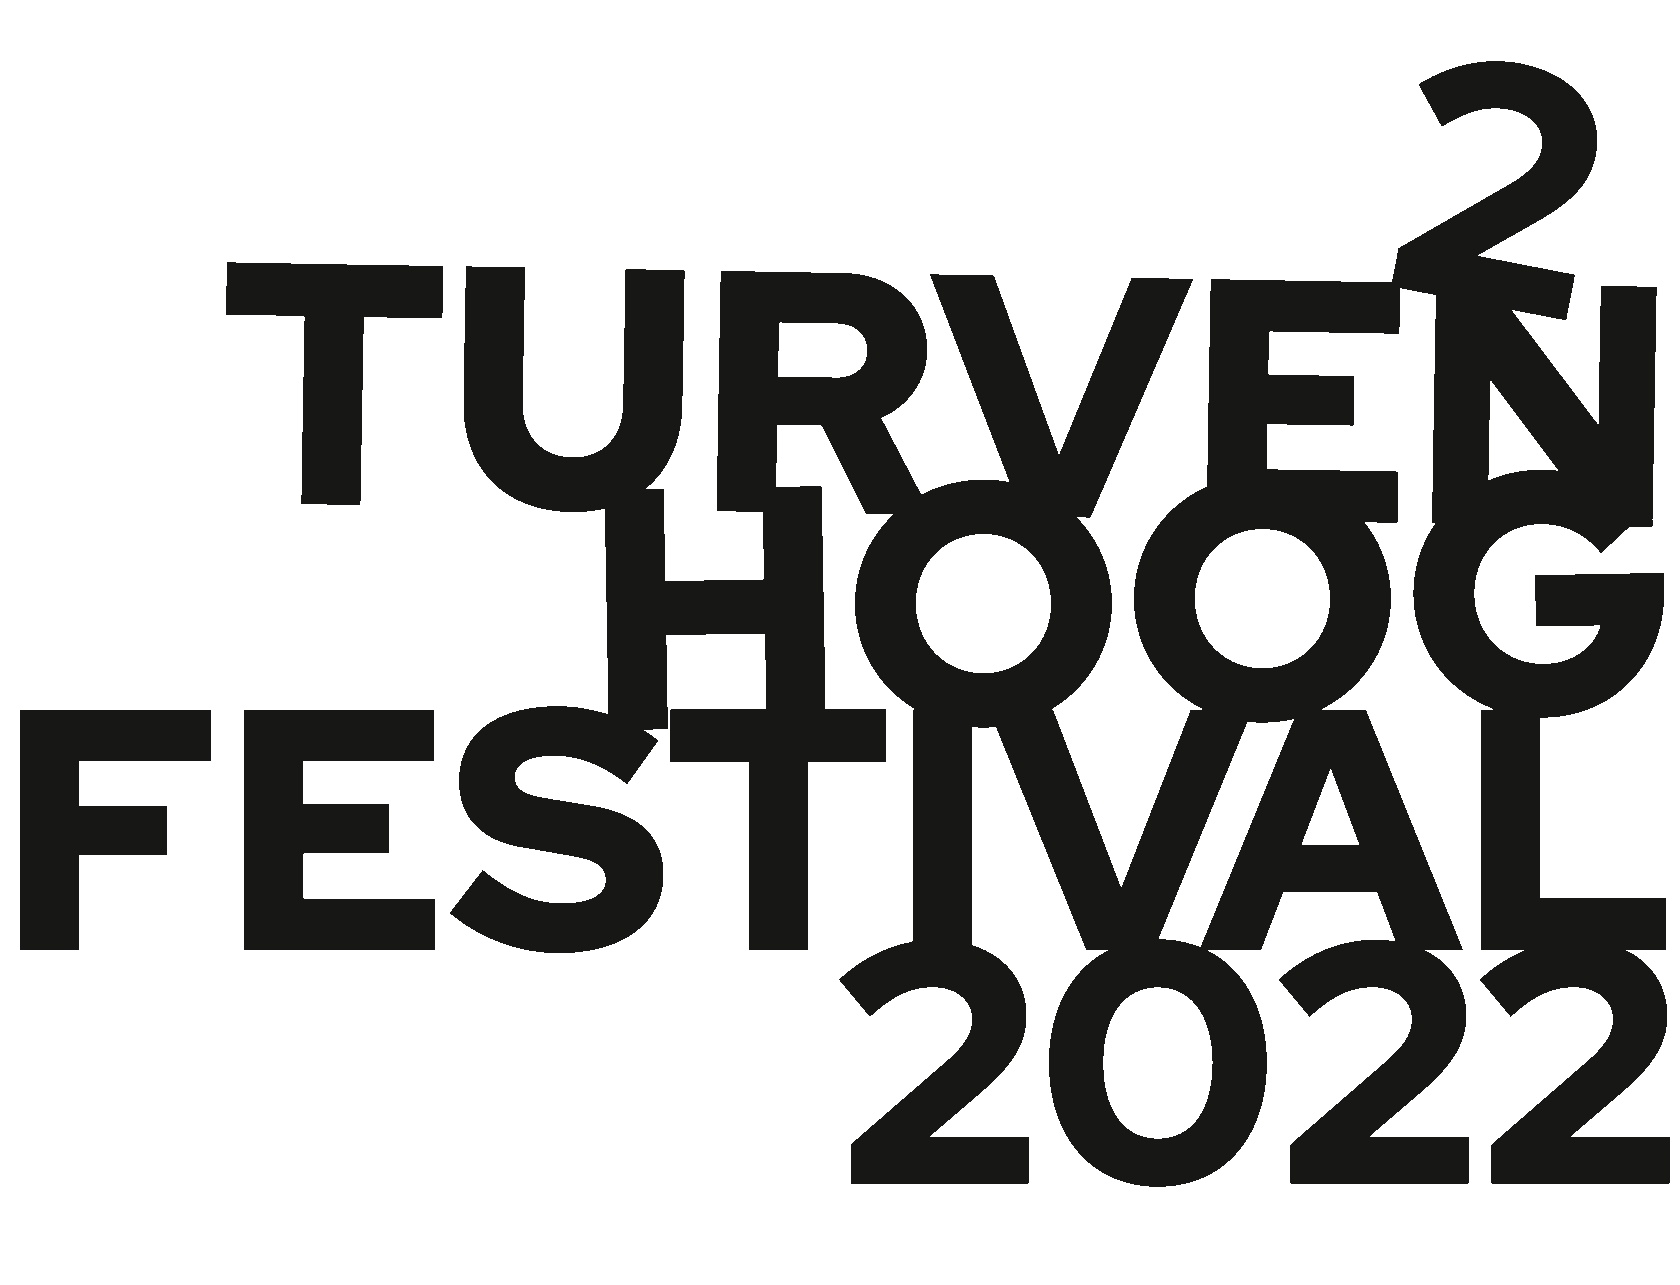 2turvenhoog festival 2022, ill festival artistico per bambini da 0 a 6 anni e adulti